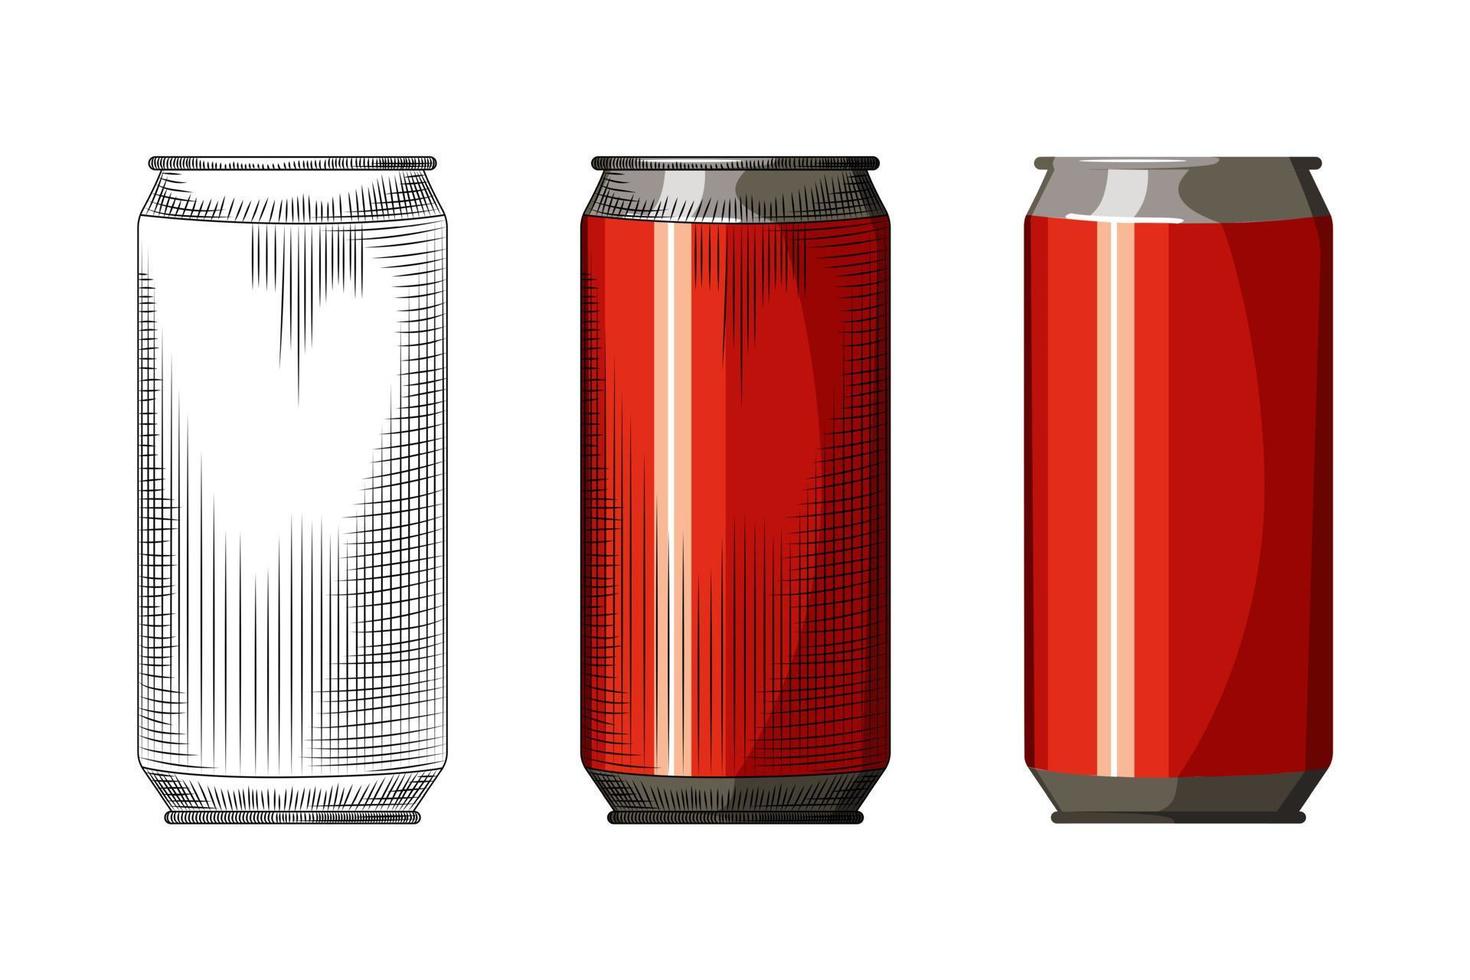 bebida vermelha pode isolado no fundo branco. modelo de lata de cerveja desenhada à mão. ilustração em vetor vintage estilo gravado.